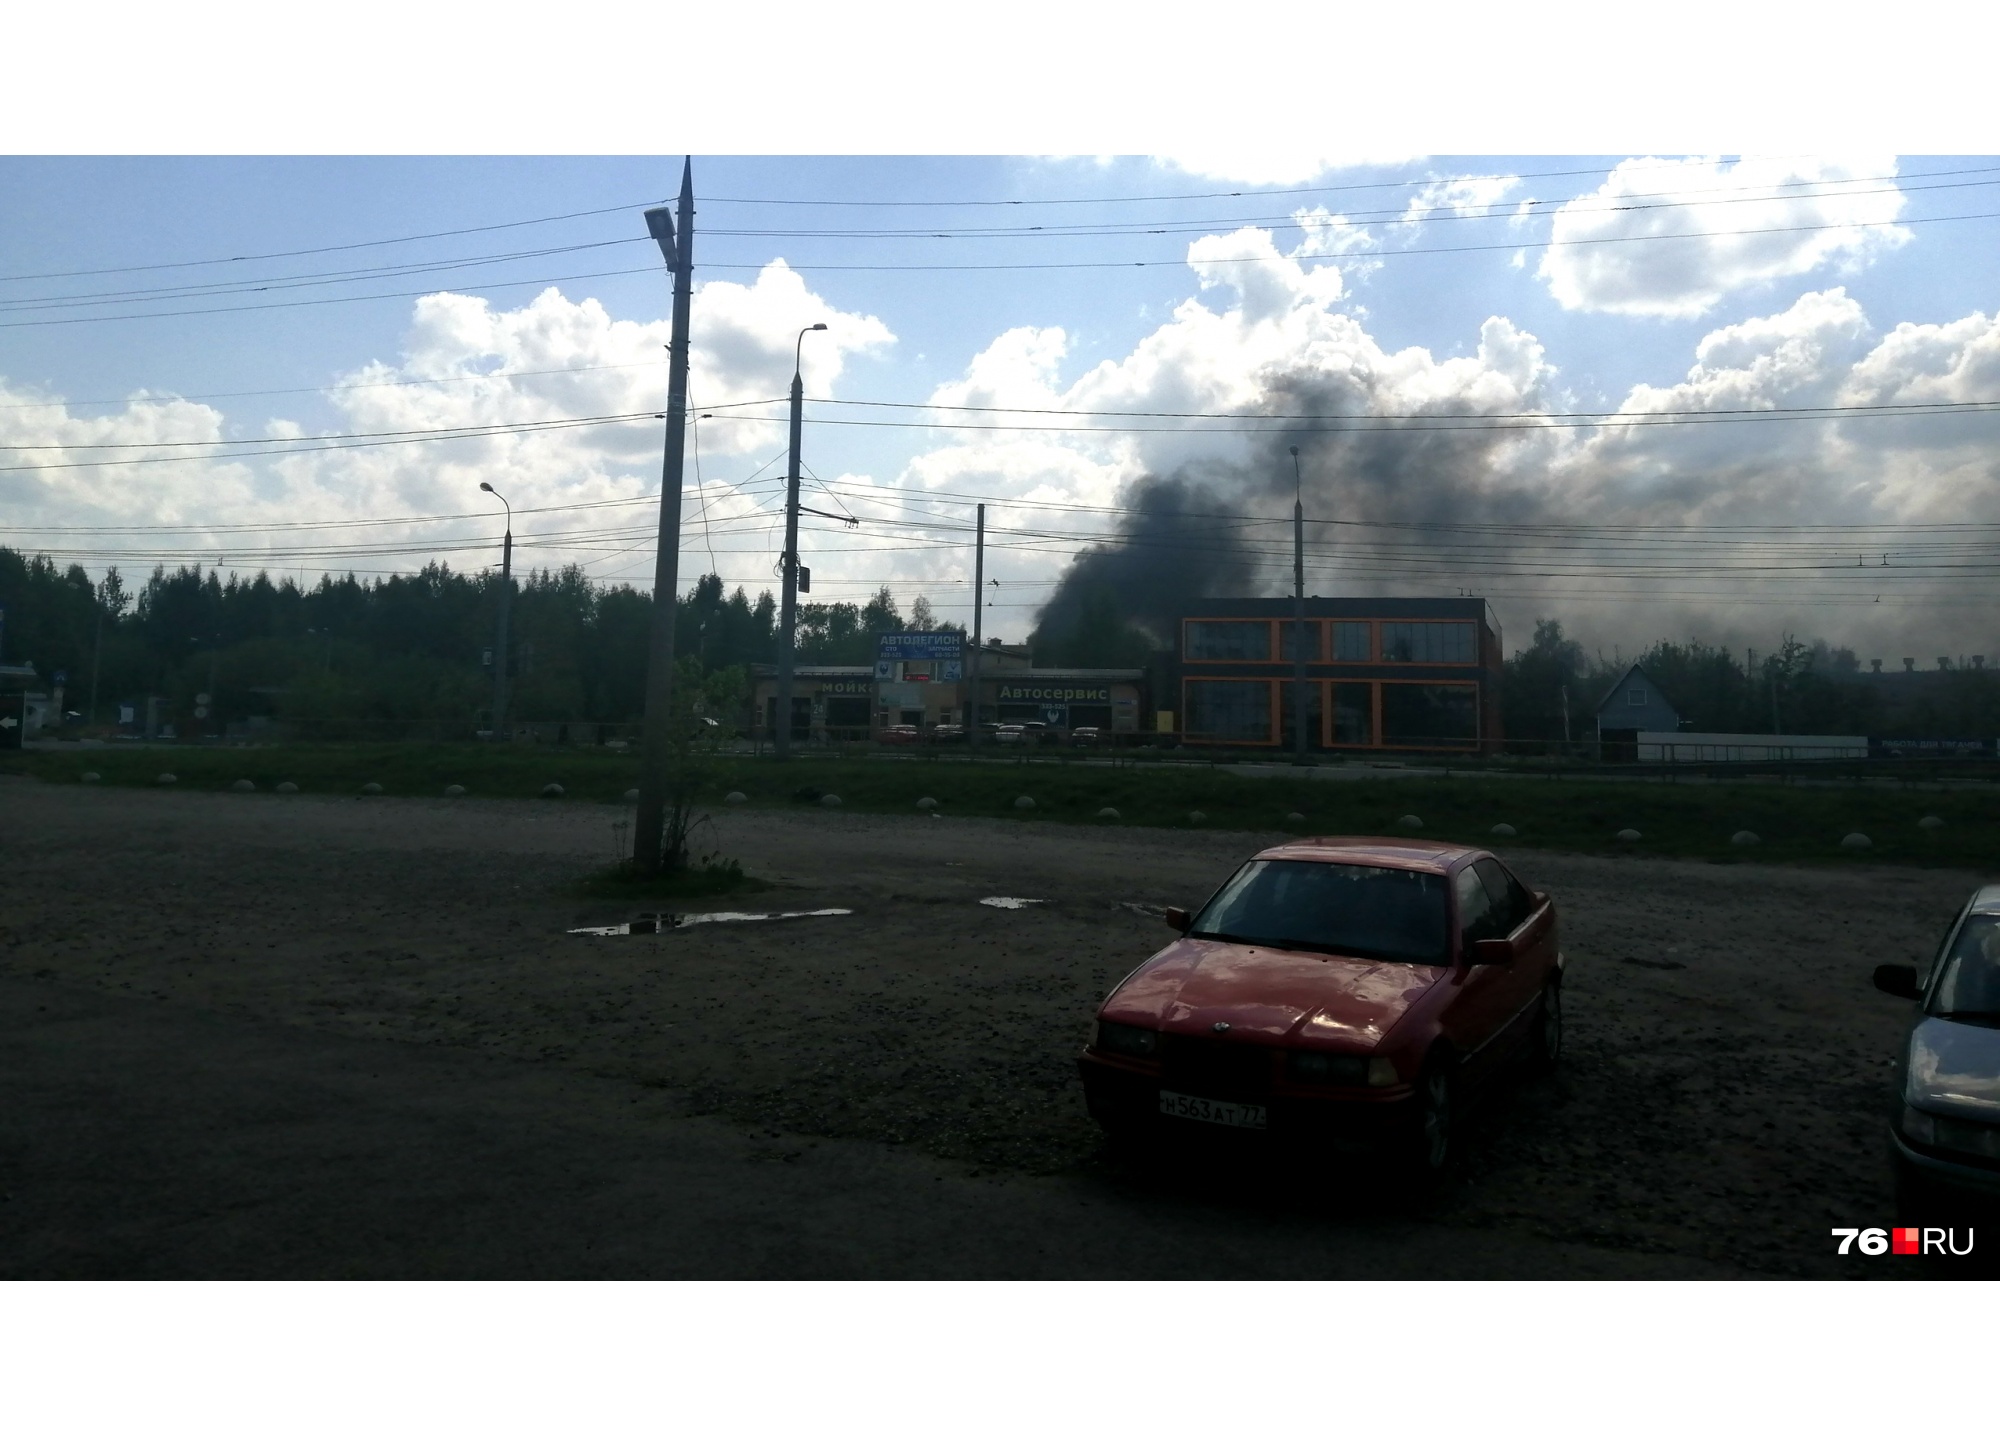 «Клубы чёрного дыма валят из промзоны»: что стало известно о пожаре в Ярославле